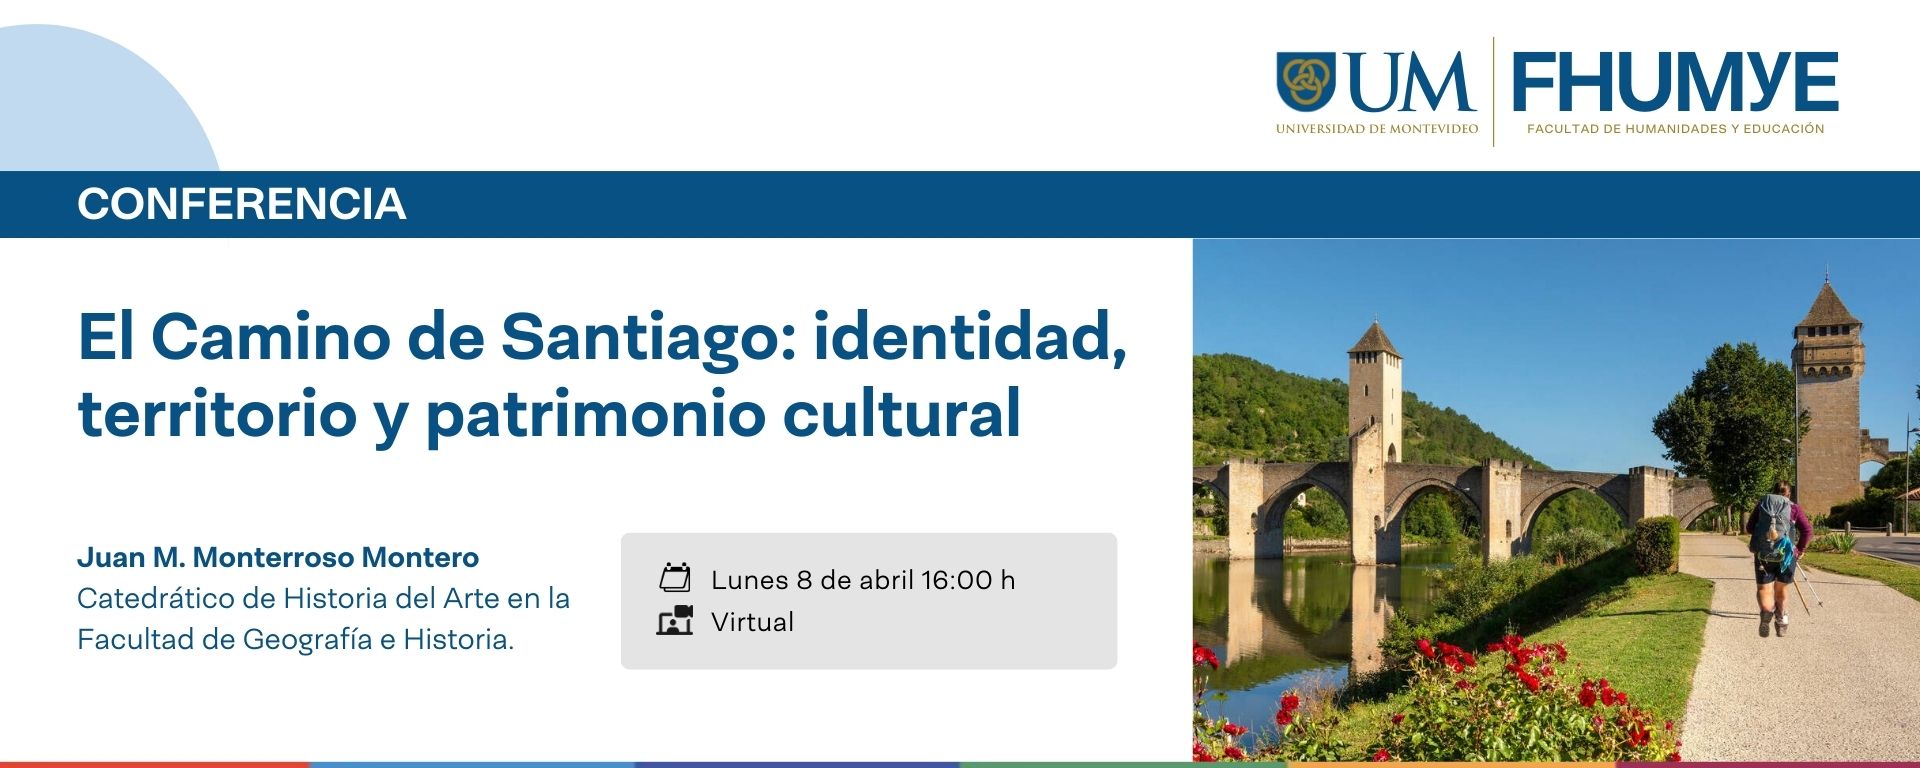 El Camino de Santiago: identidad, territorio y patrimonio cultural